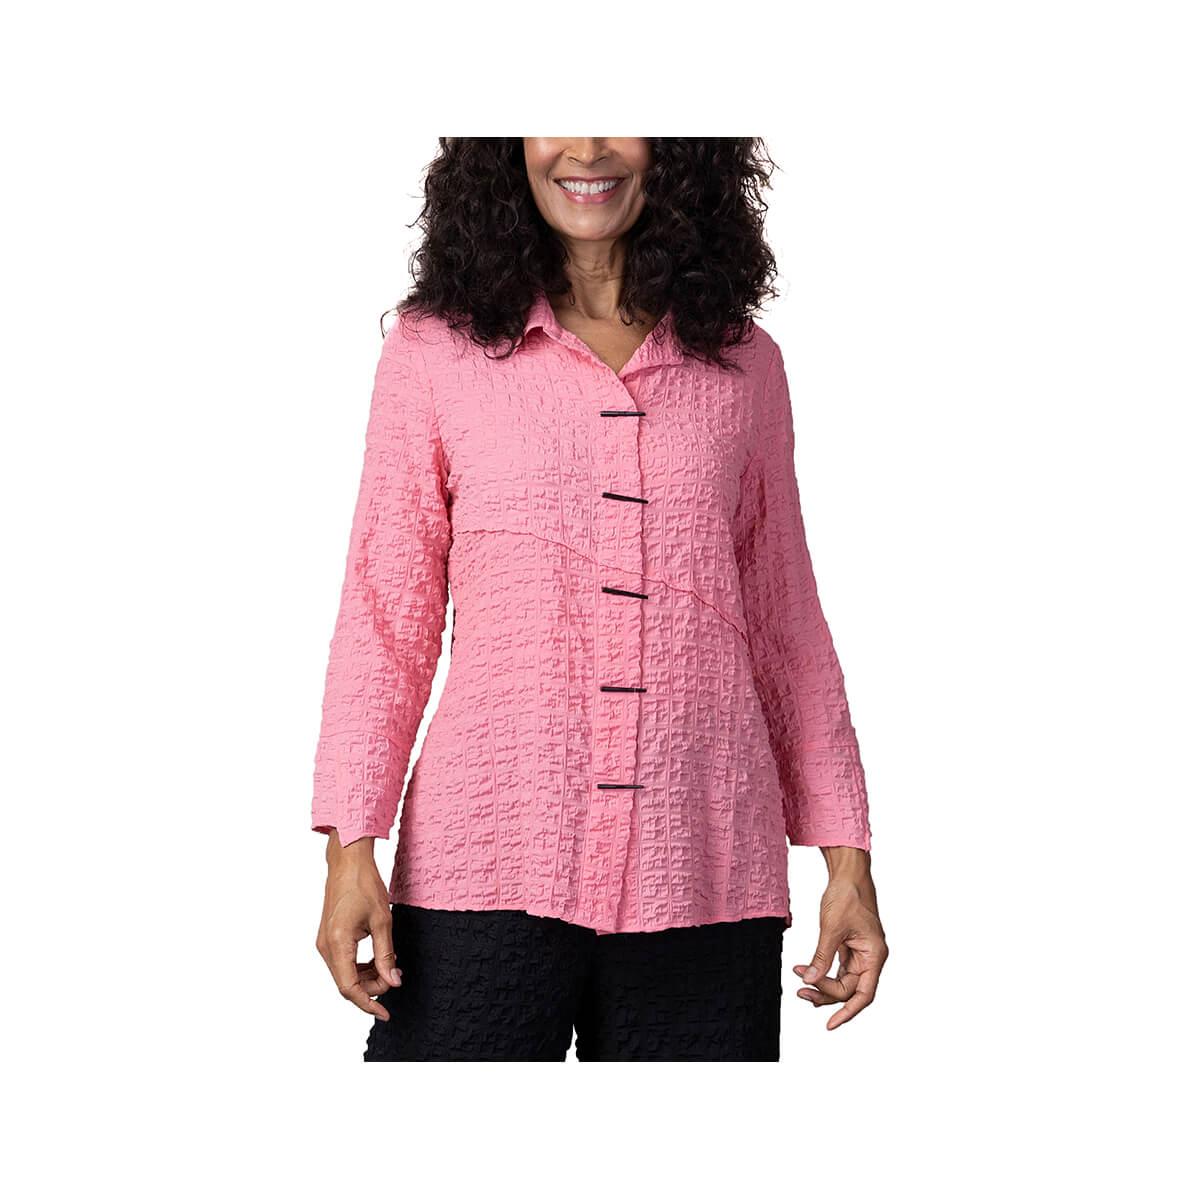  Women's Pucker Weave Piano Long Sleeve Button Shirt